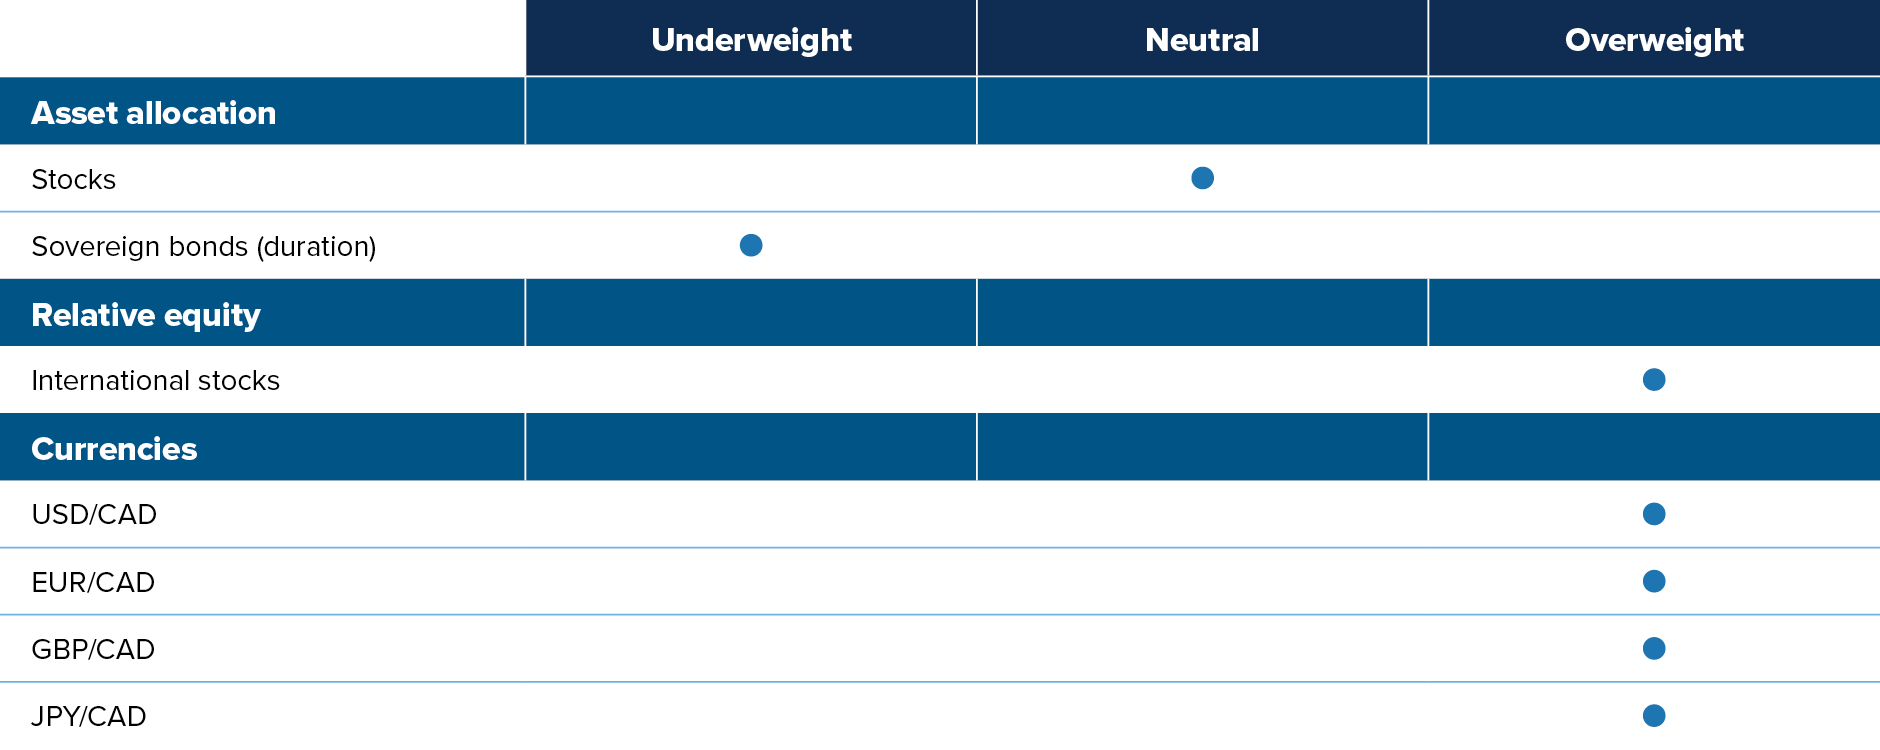 Stocks: neutral. Sovereign bonds, underweight. International stocks, overweight. USD/CAD, overweight. EUR/CAD, overweight. GBP/CAD, overweight. JPY/CAD, overweight.